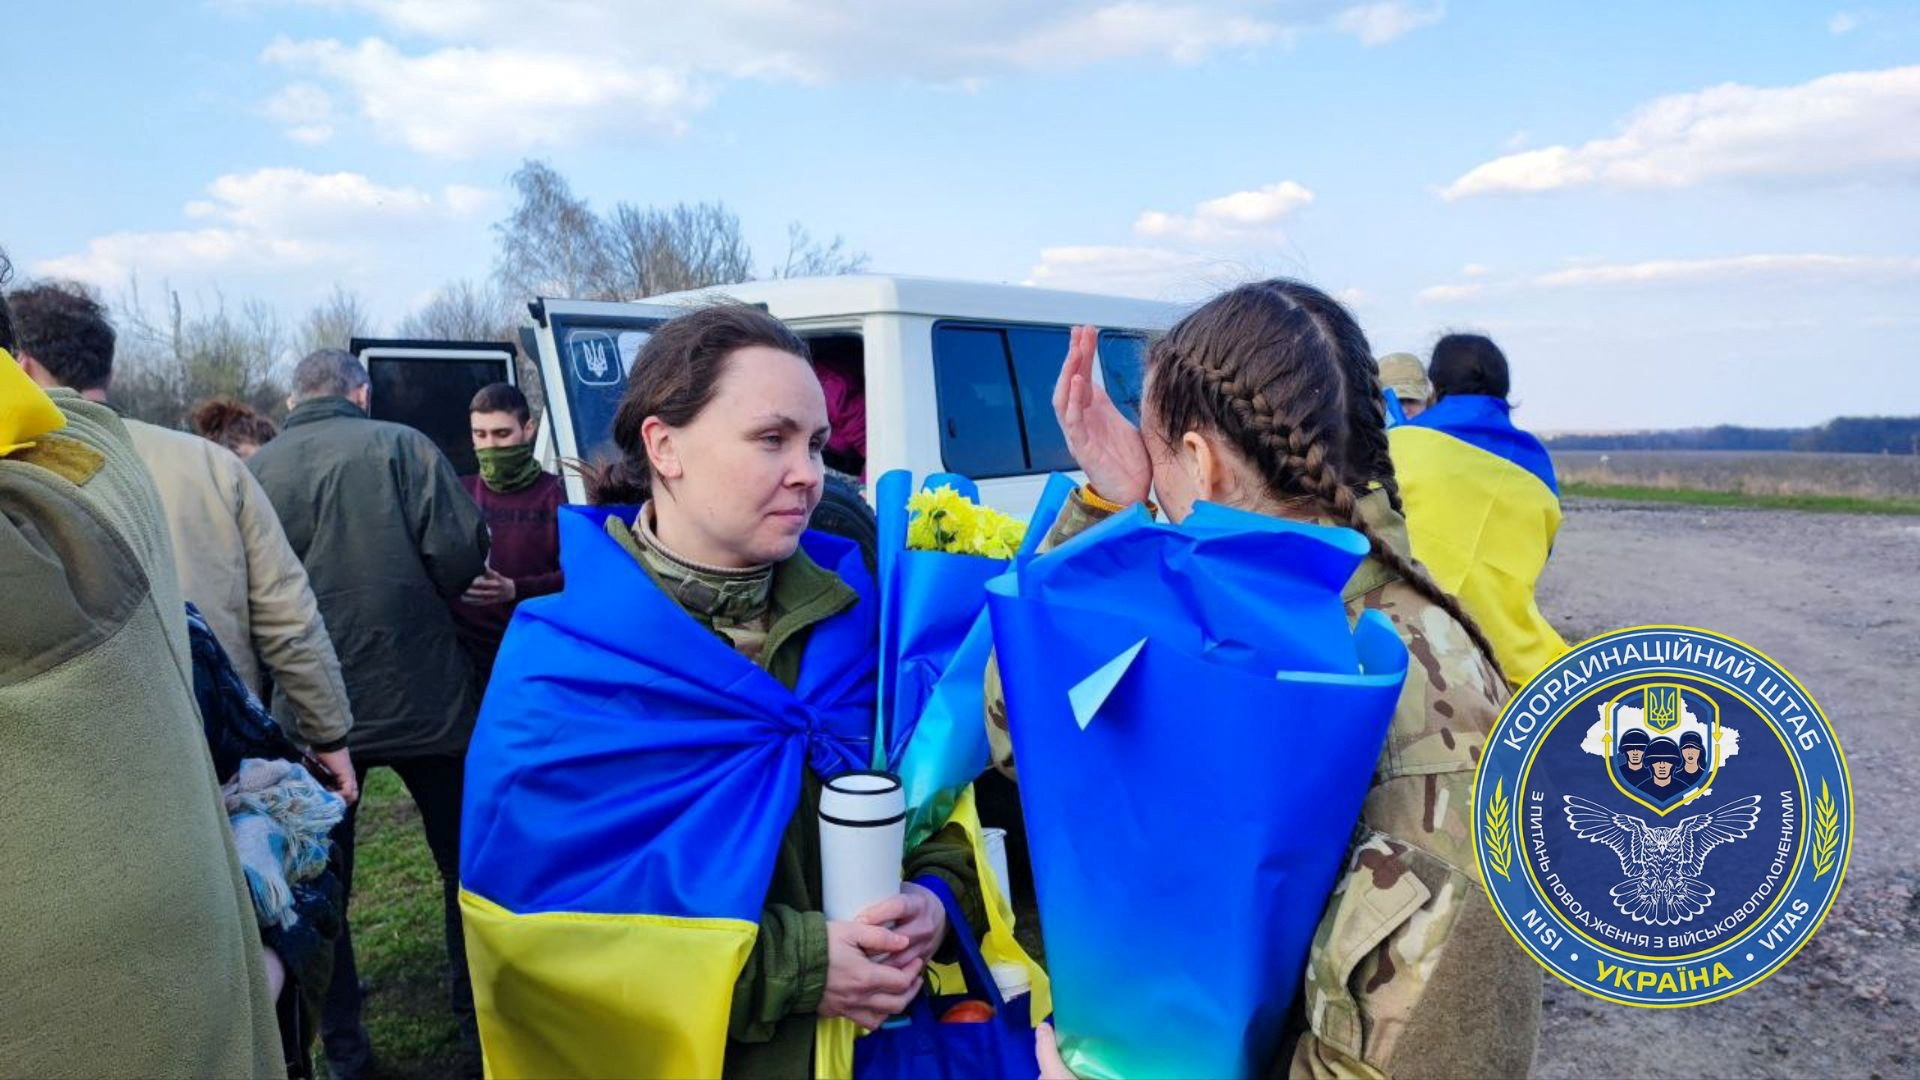 Αντάλλαξαν αιχμαλώτους Ρωσία και Ουκρανία – Ανάμεσά τους και οι υπερασπιστές του Αζοφστάλ